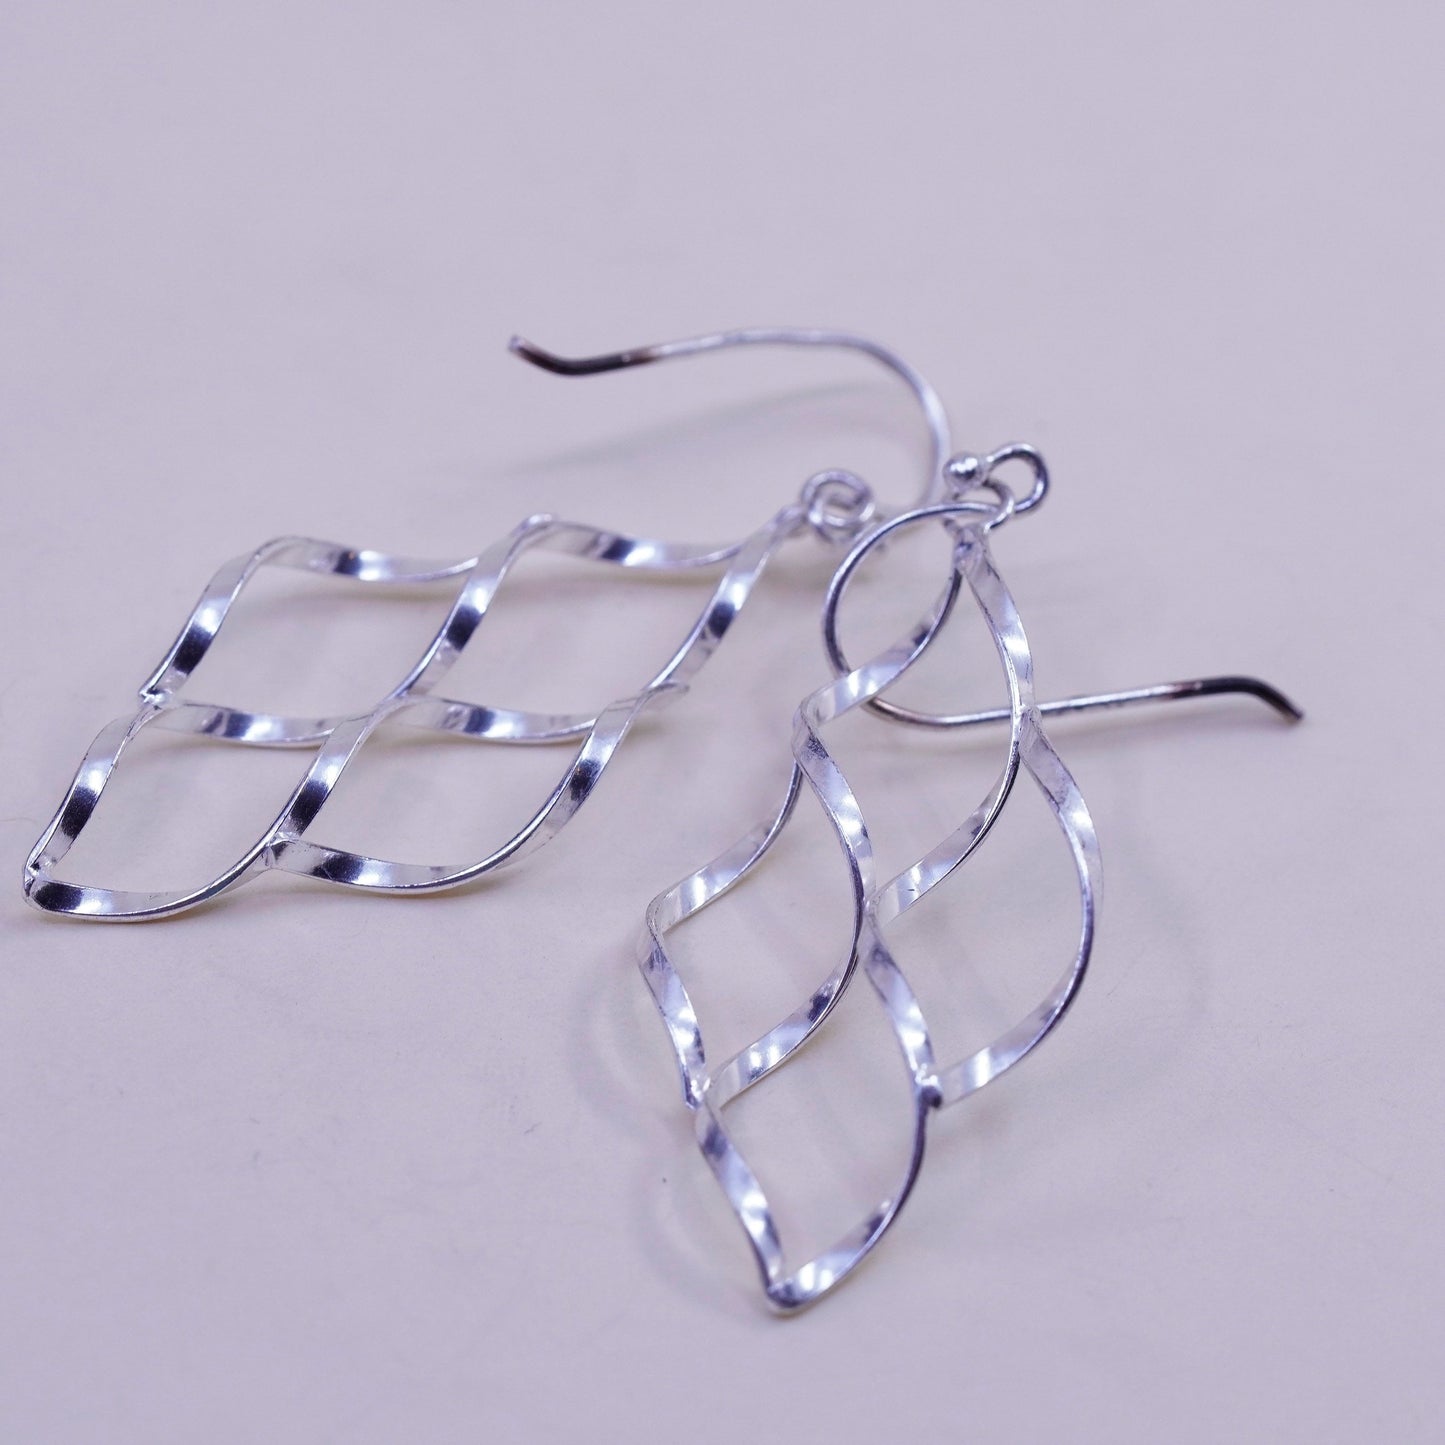 Vintage sterling silver handmade earrings, 925 twisted dangles